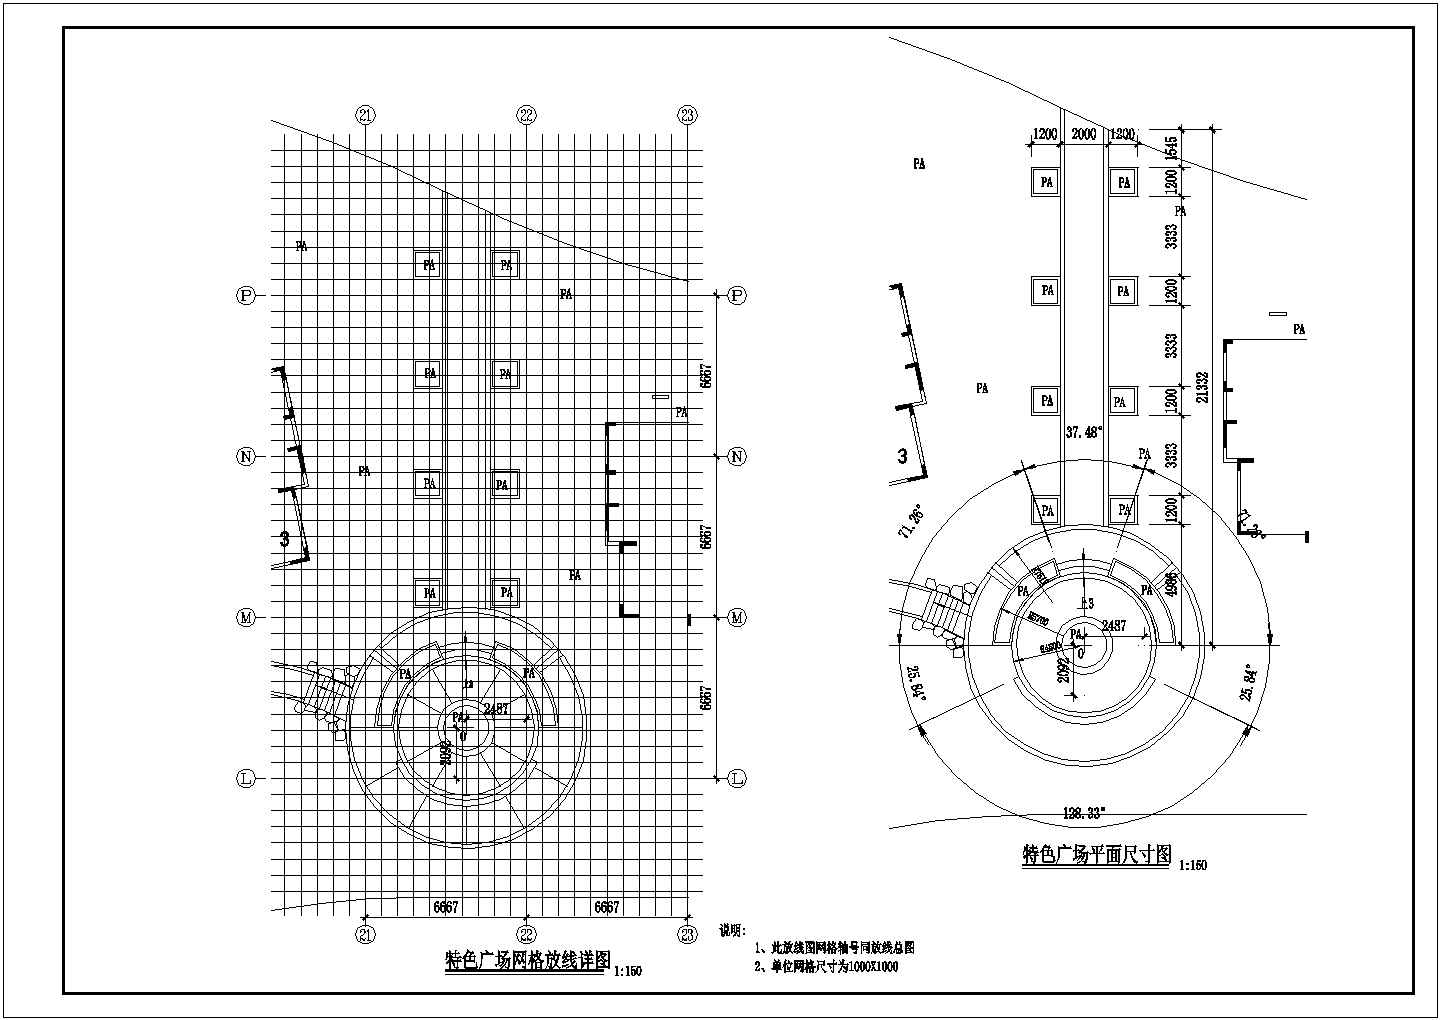 江西省南昌市龙信家园小区景观设计施工图CAD图纸整套